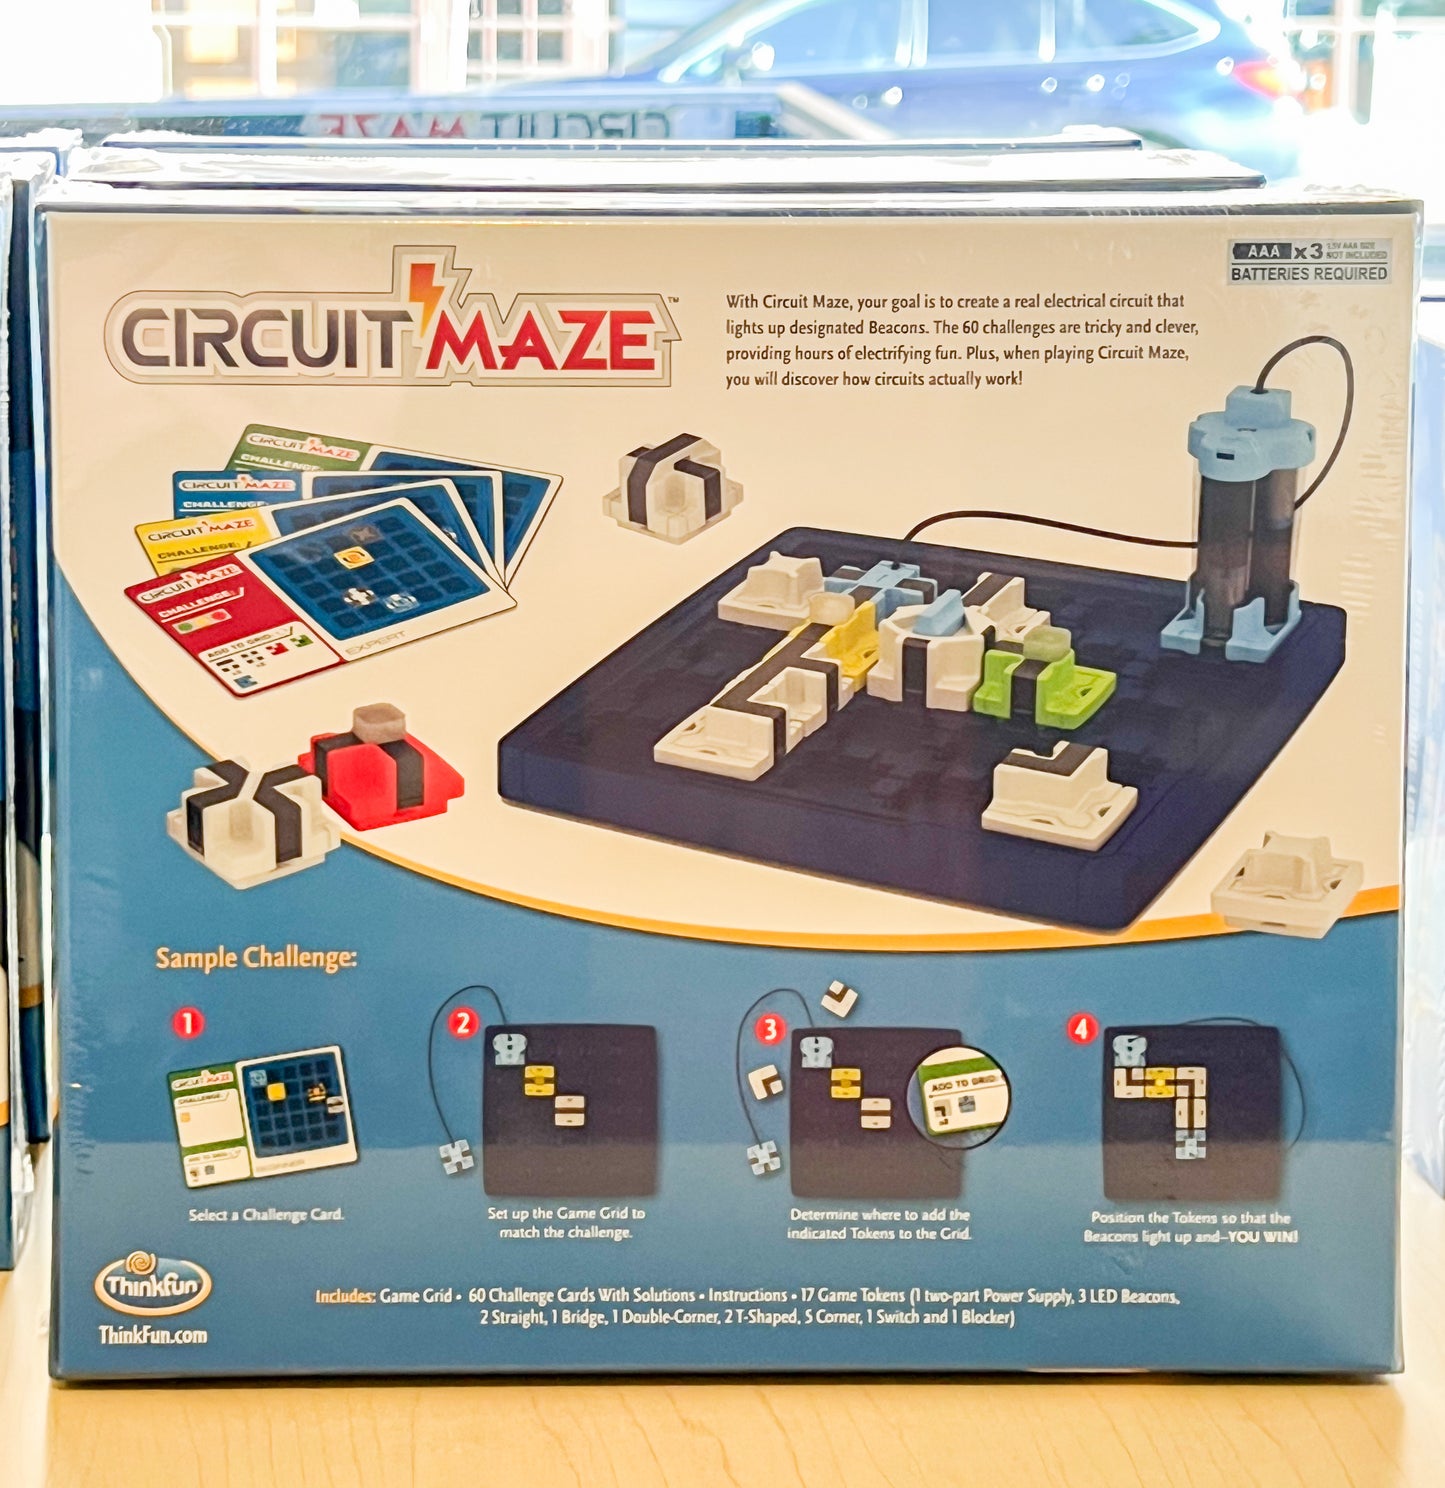 Circuit Maze Logic Game